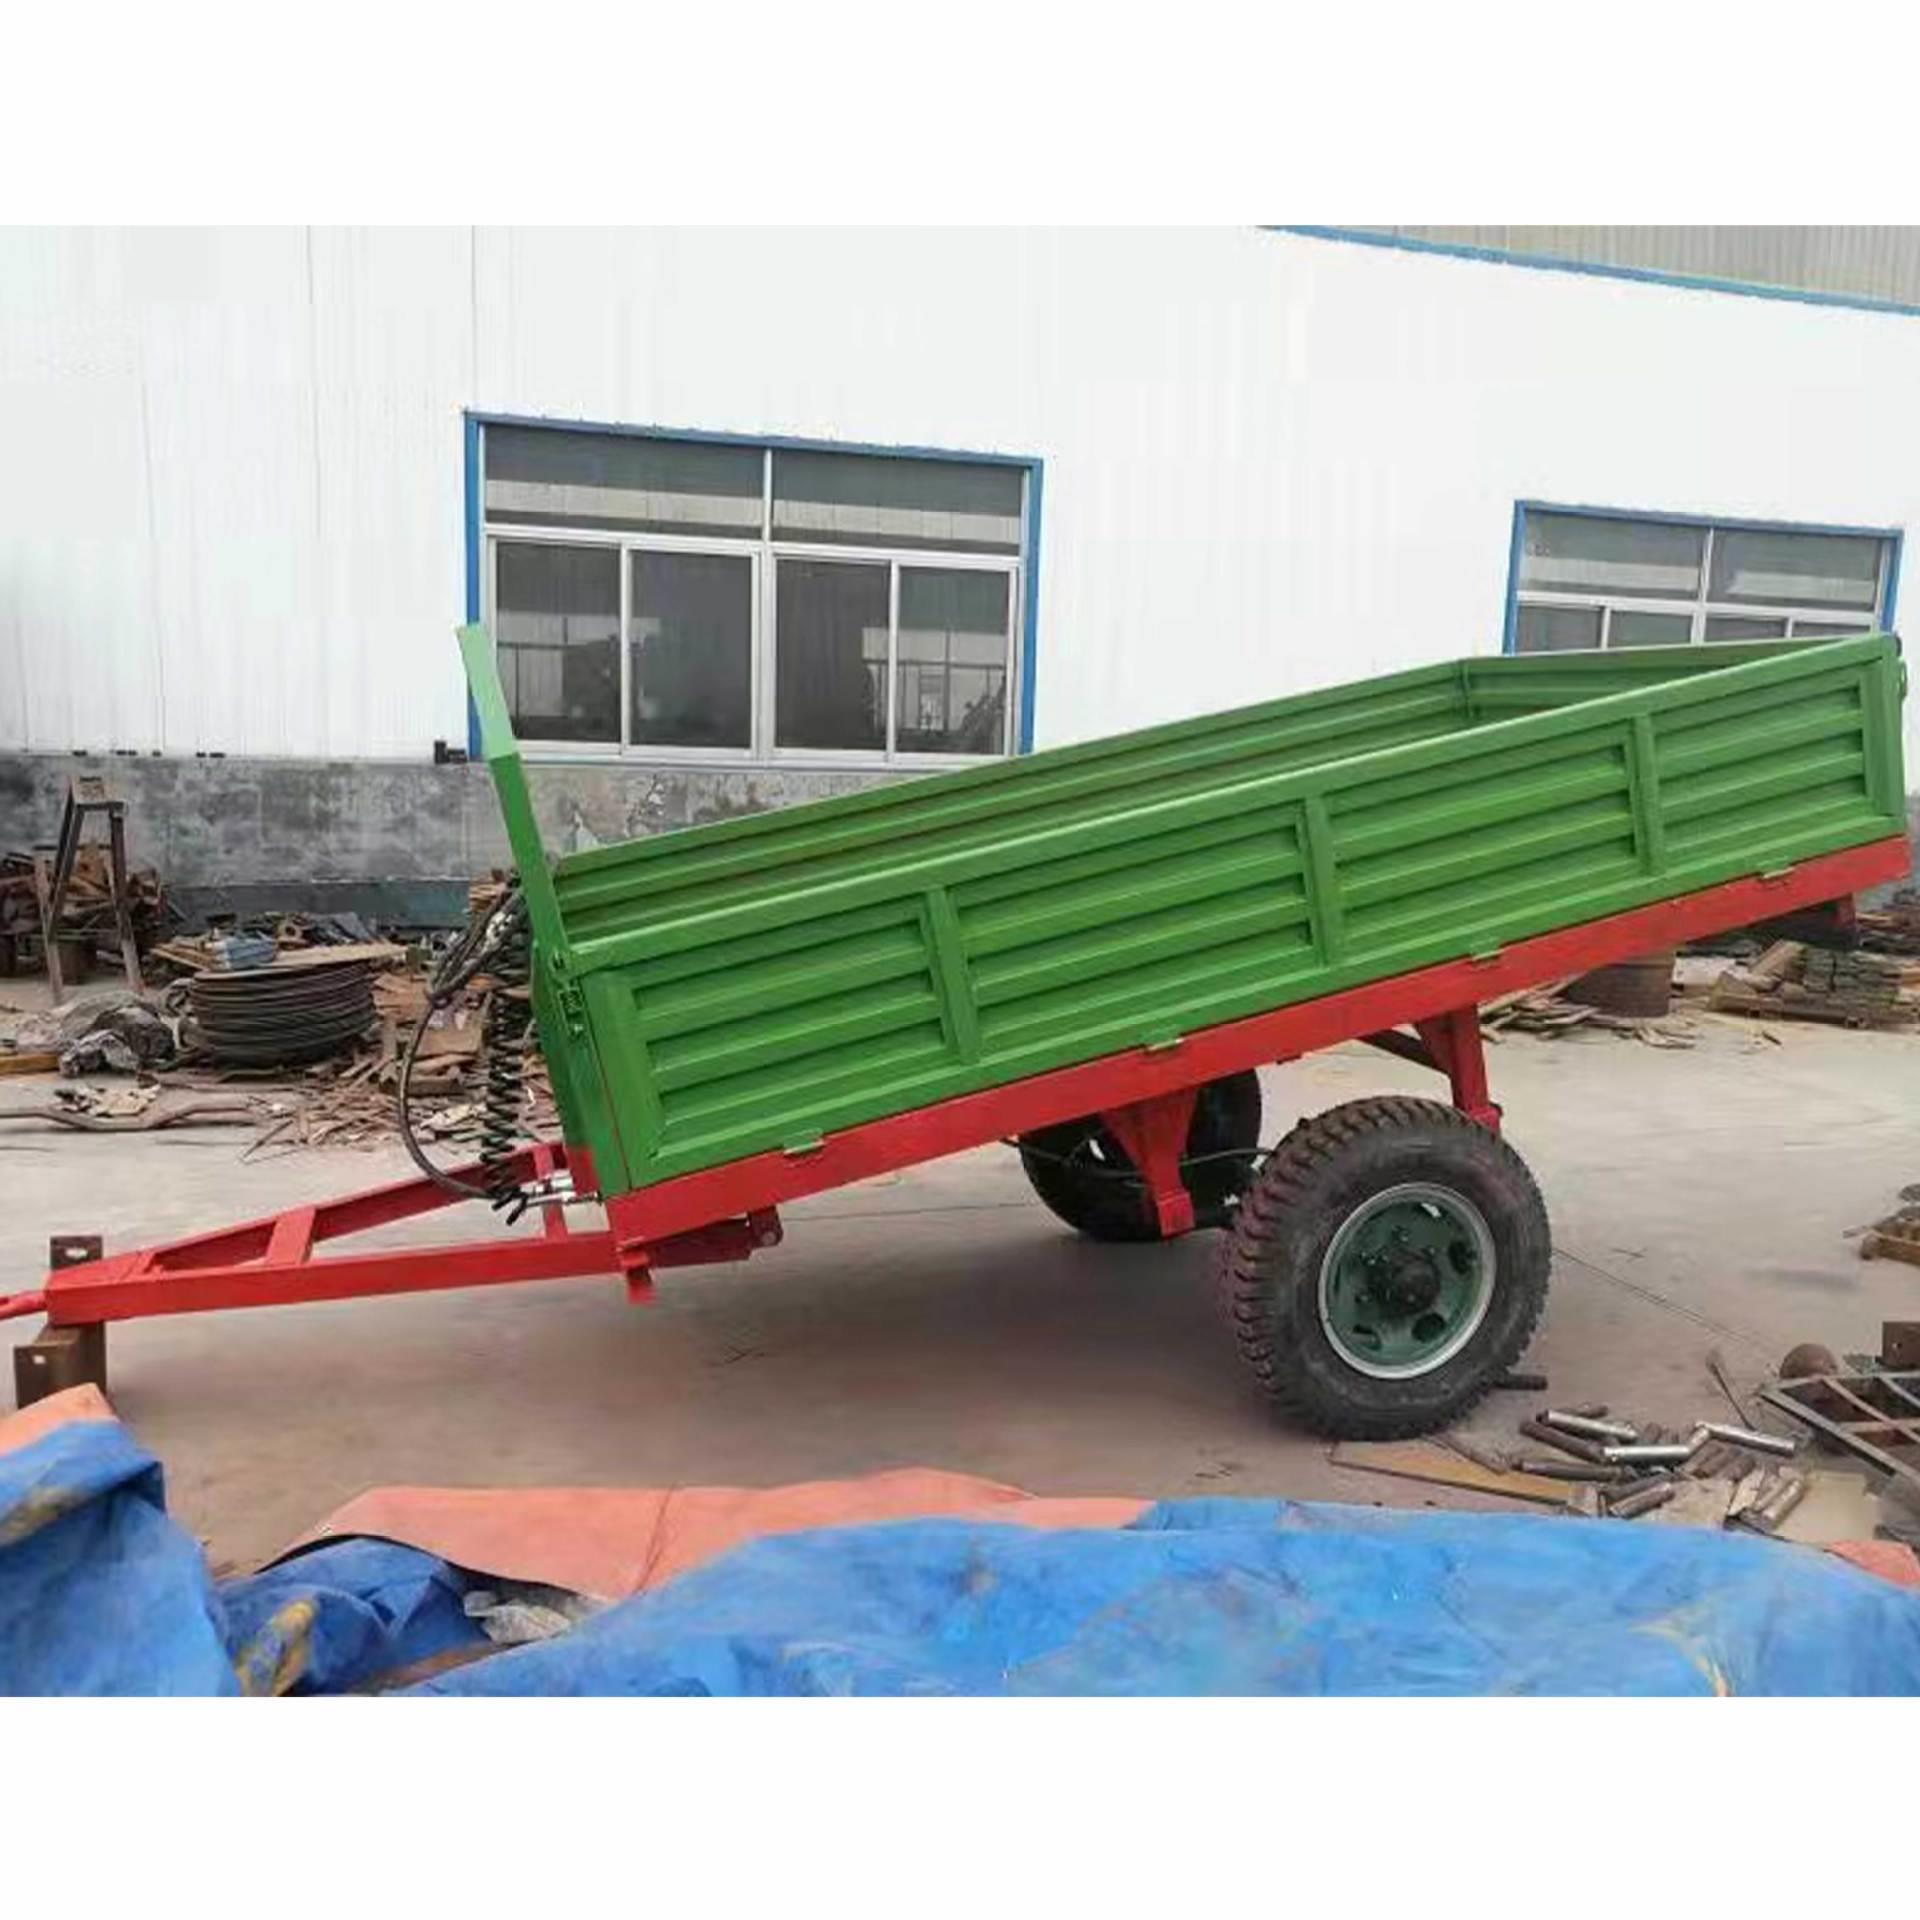 制作四轮拖拉机牵引拖车斗2吨5吨拖车拖斗农用拖车后翻车斗